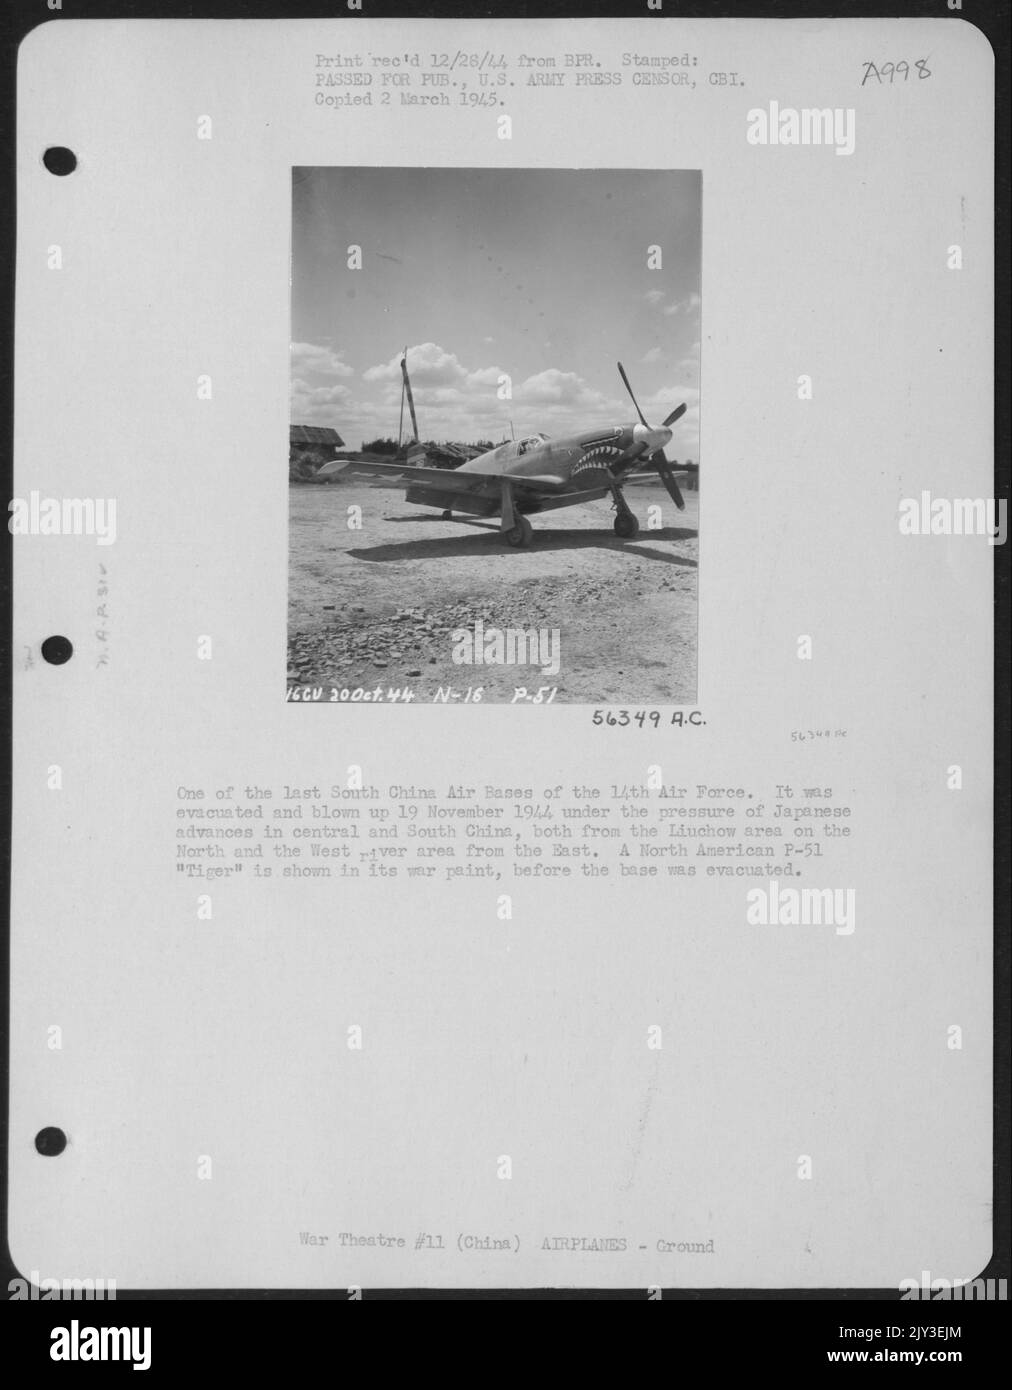 L'une des dernières bases aériennes de la Chine méridionale de l'armée de l'air de 14th. Il a été évacué et a explosé le 19 novembre 1944 sous la pression des avances japonaises en Chine centrale et du Sud, à la fois de la région de Liuchow sur le Nord et de la région du fleuve Ouest Banque D'Images